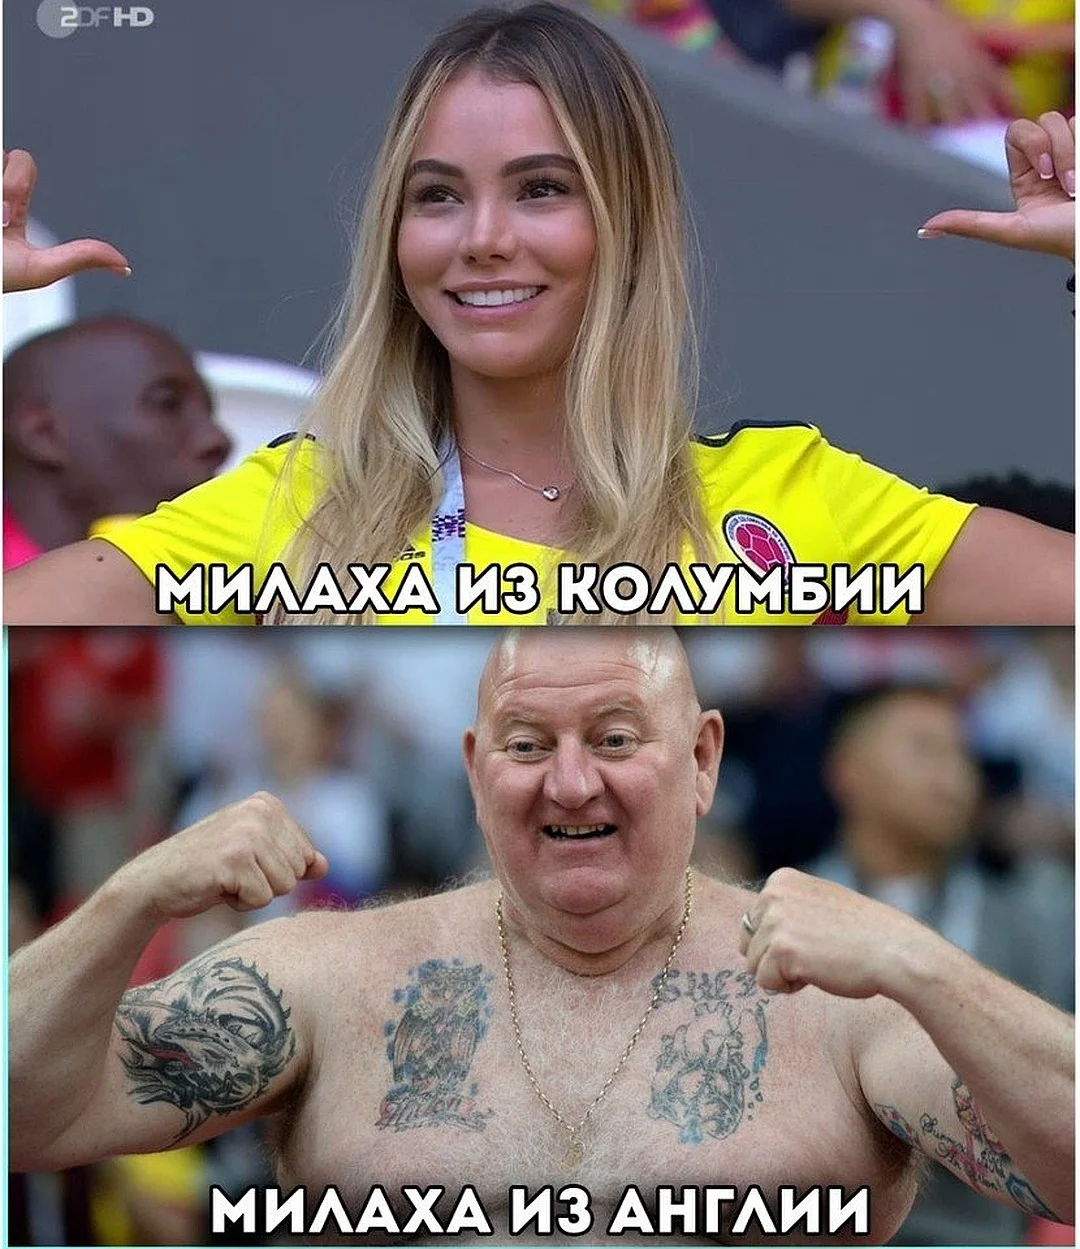 Смешные мемы о ЧМ-2018 по футболу, которые заставят тебя смеяться - фото 393299